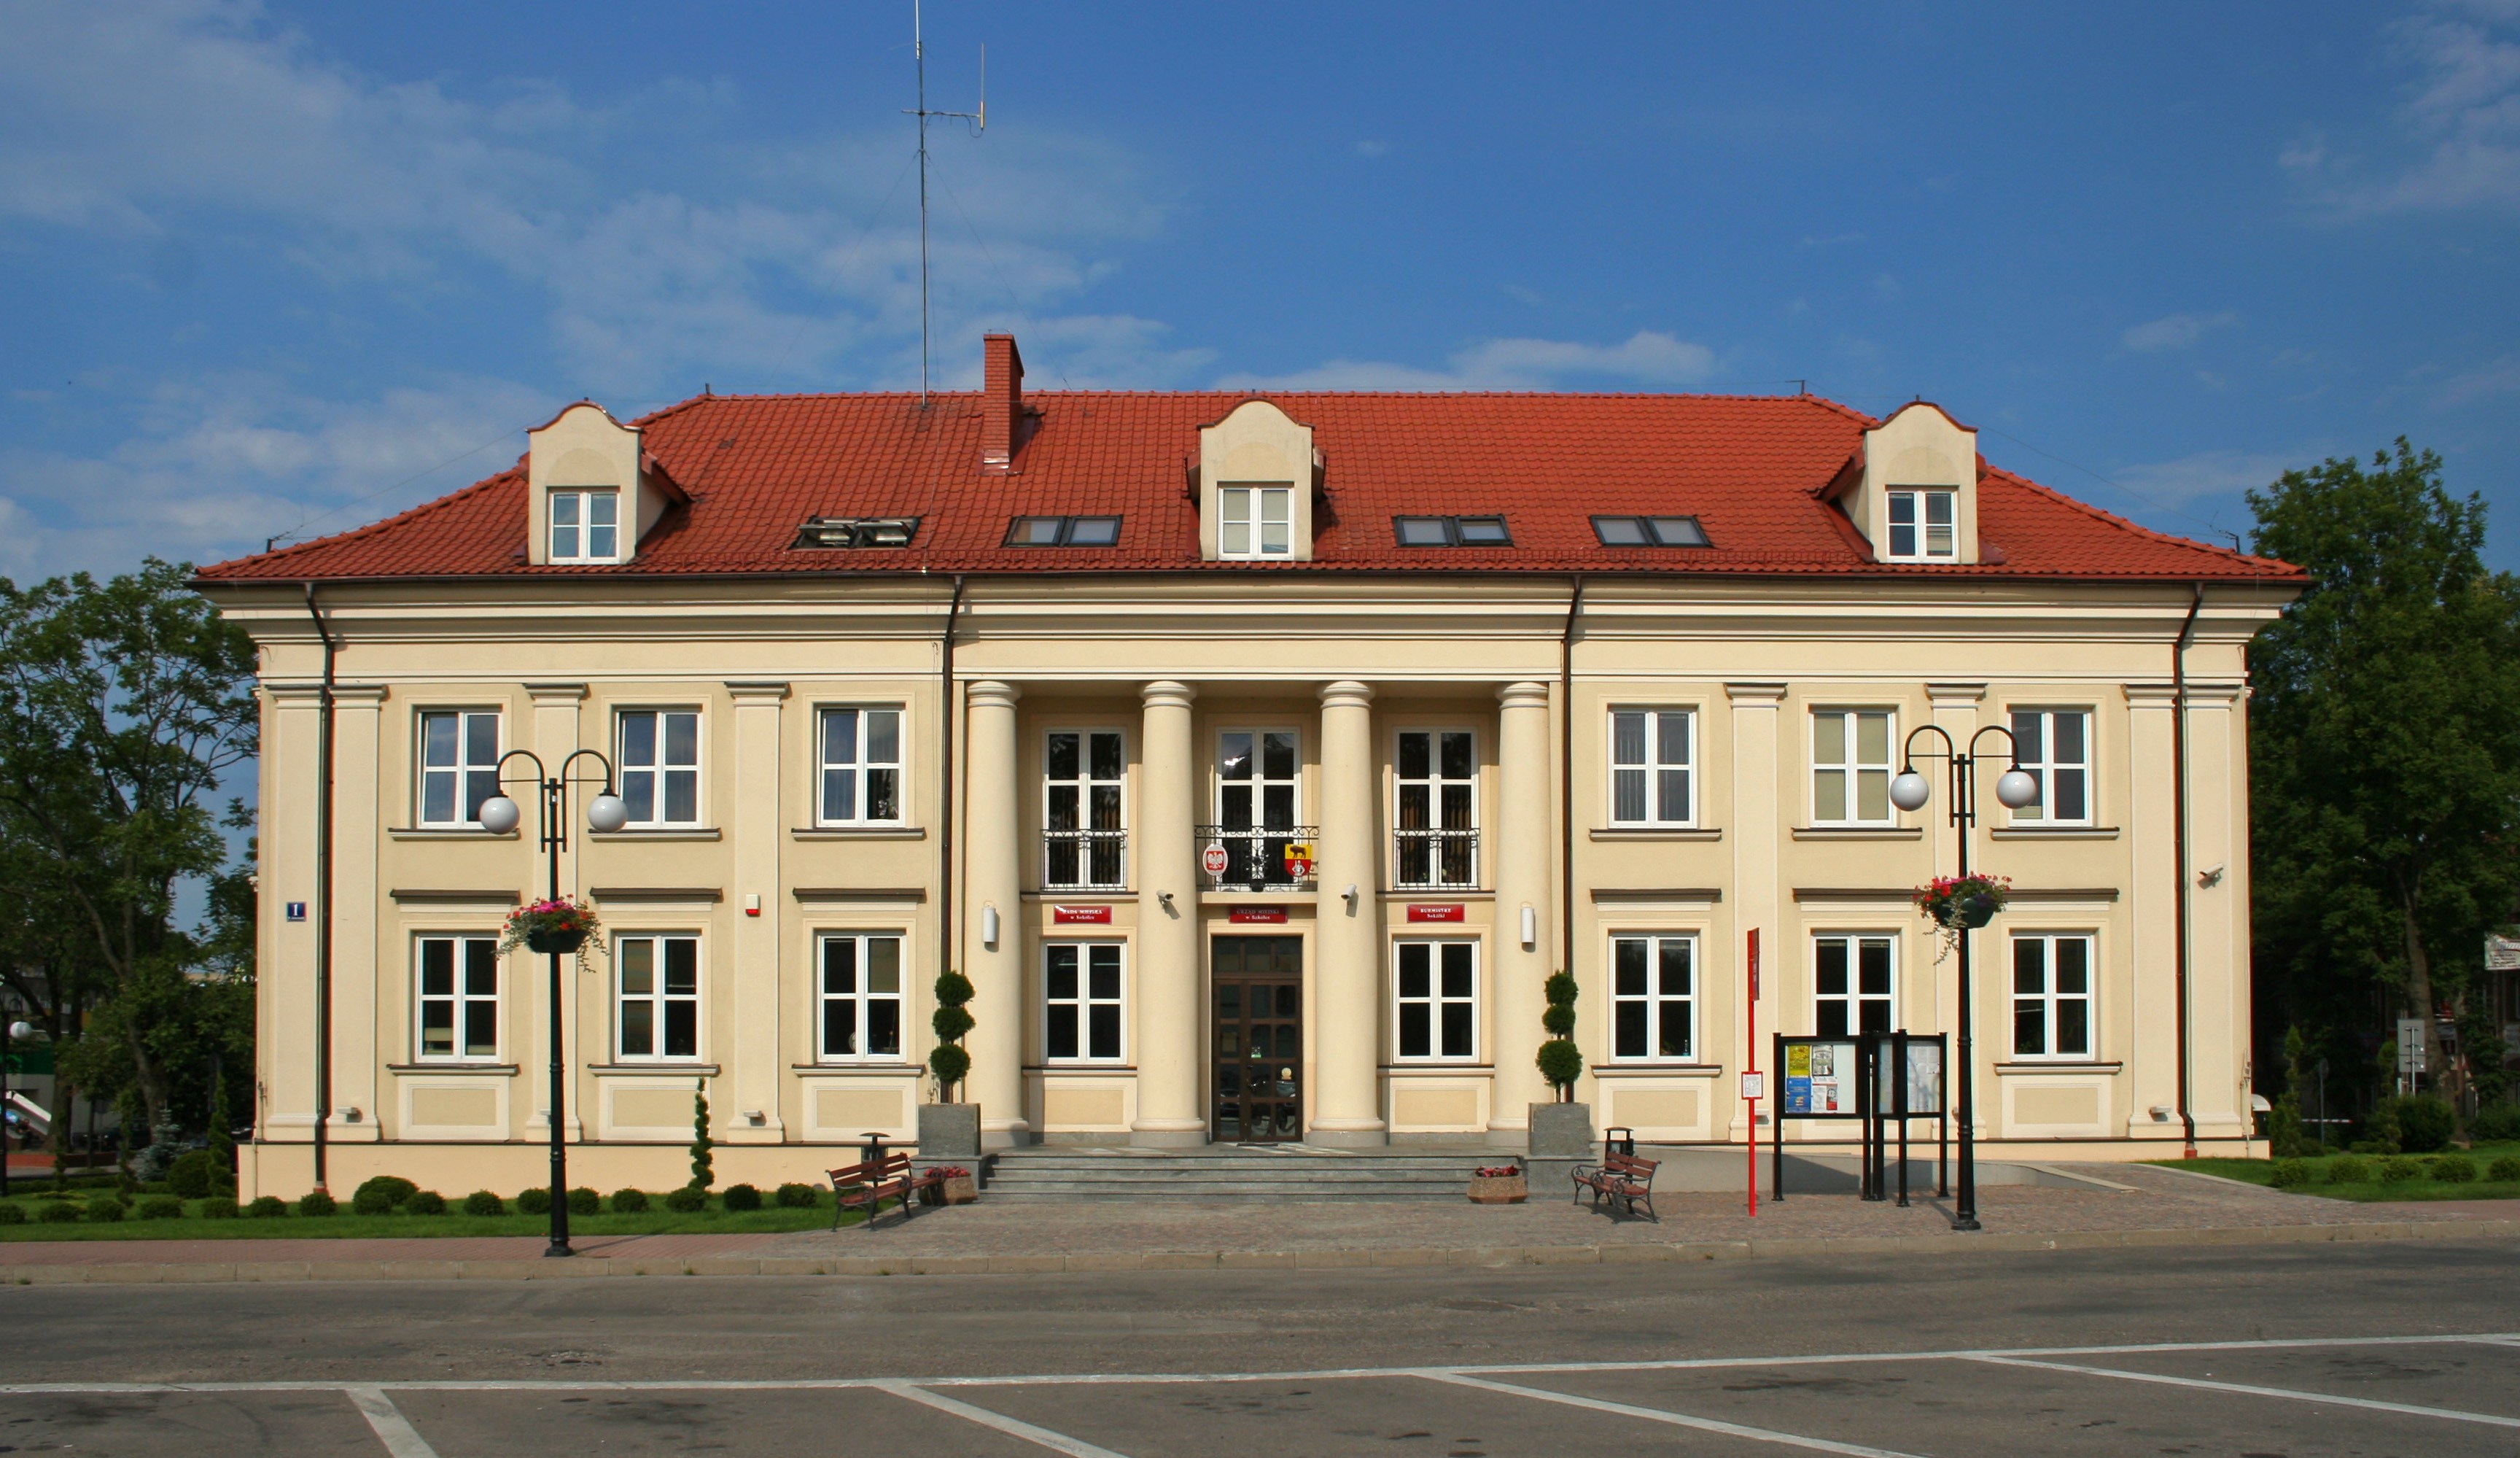 Sokółka - Town hall